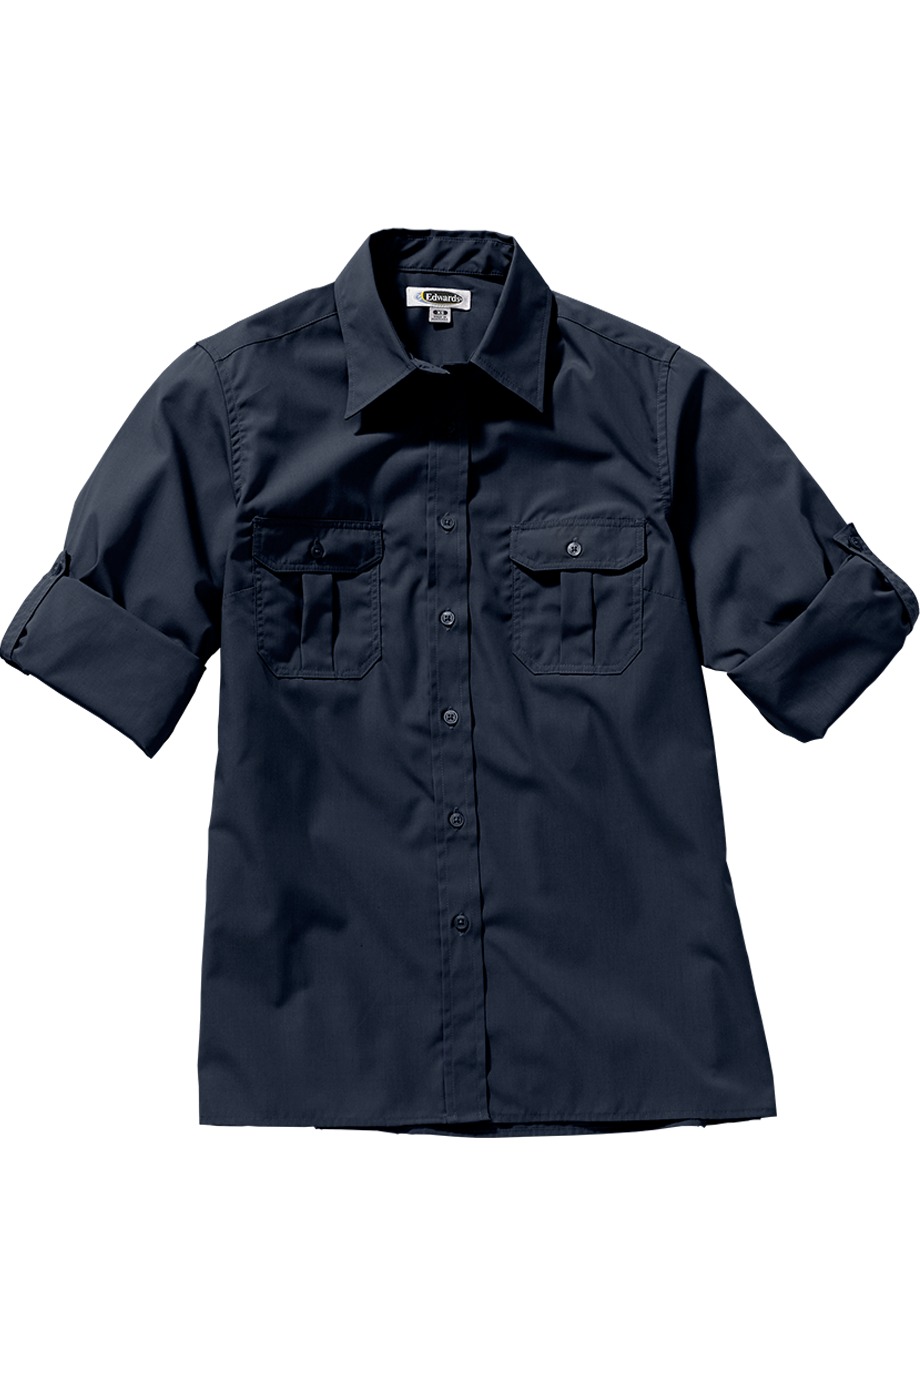 Edwards Garment 5288 - W Roll Sleeve Shirt